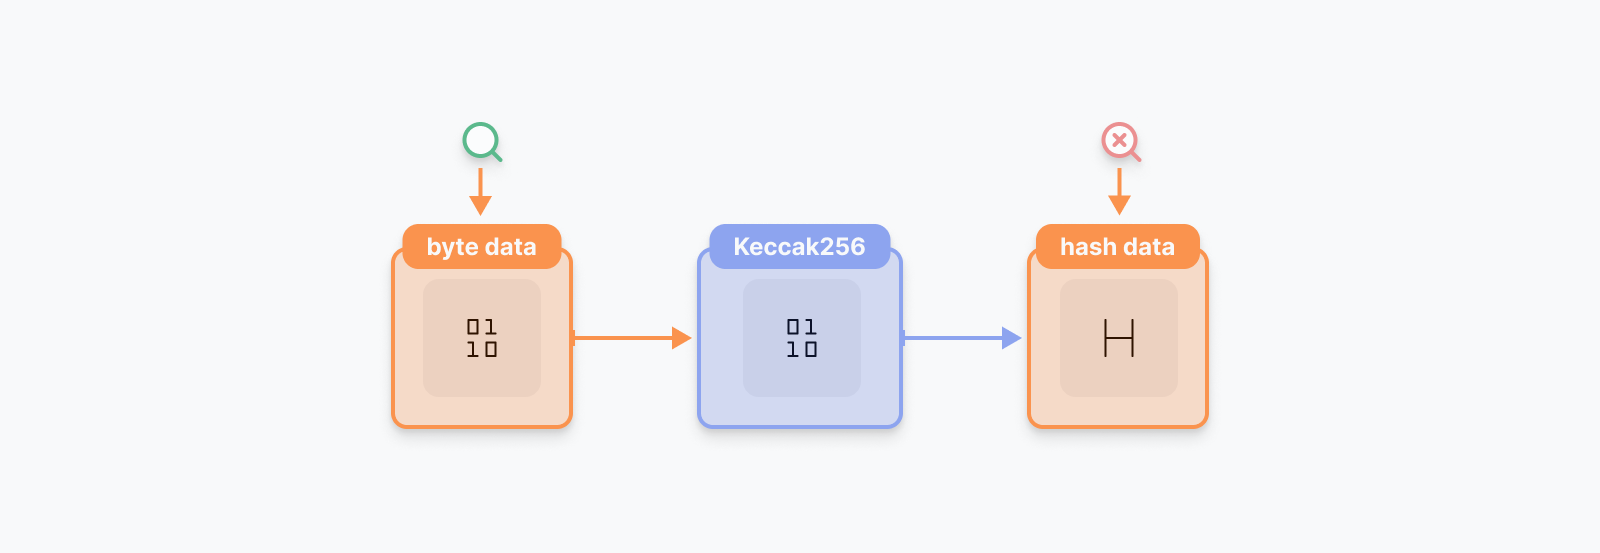 keccak256を使うと元のデータを調べることができない